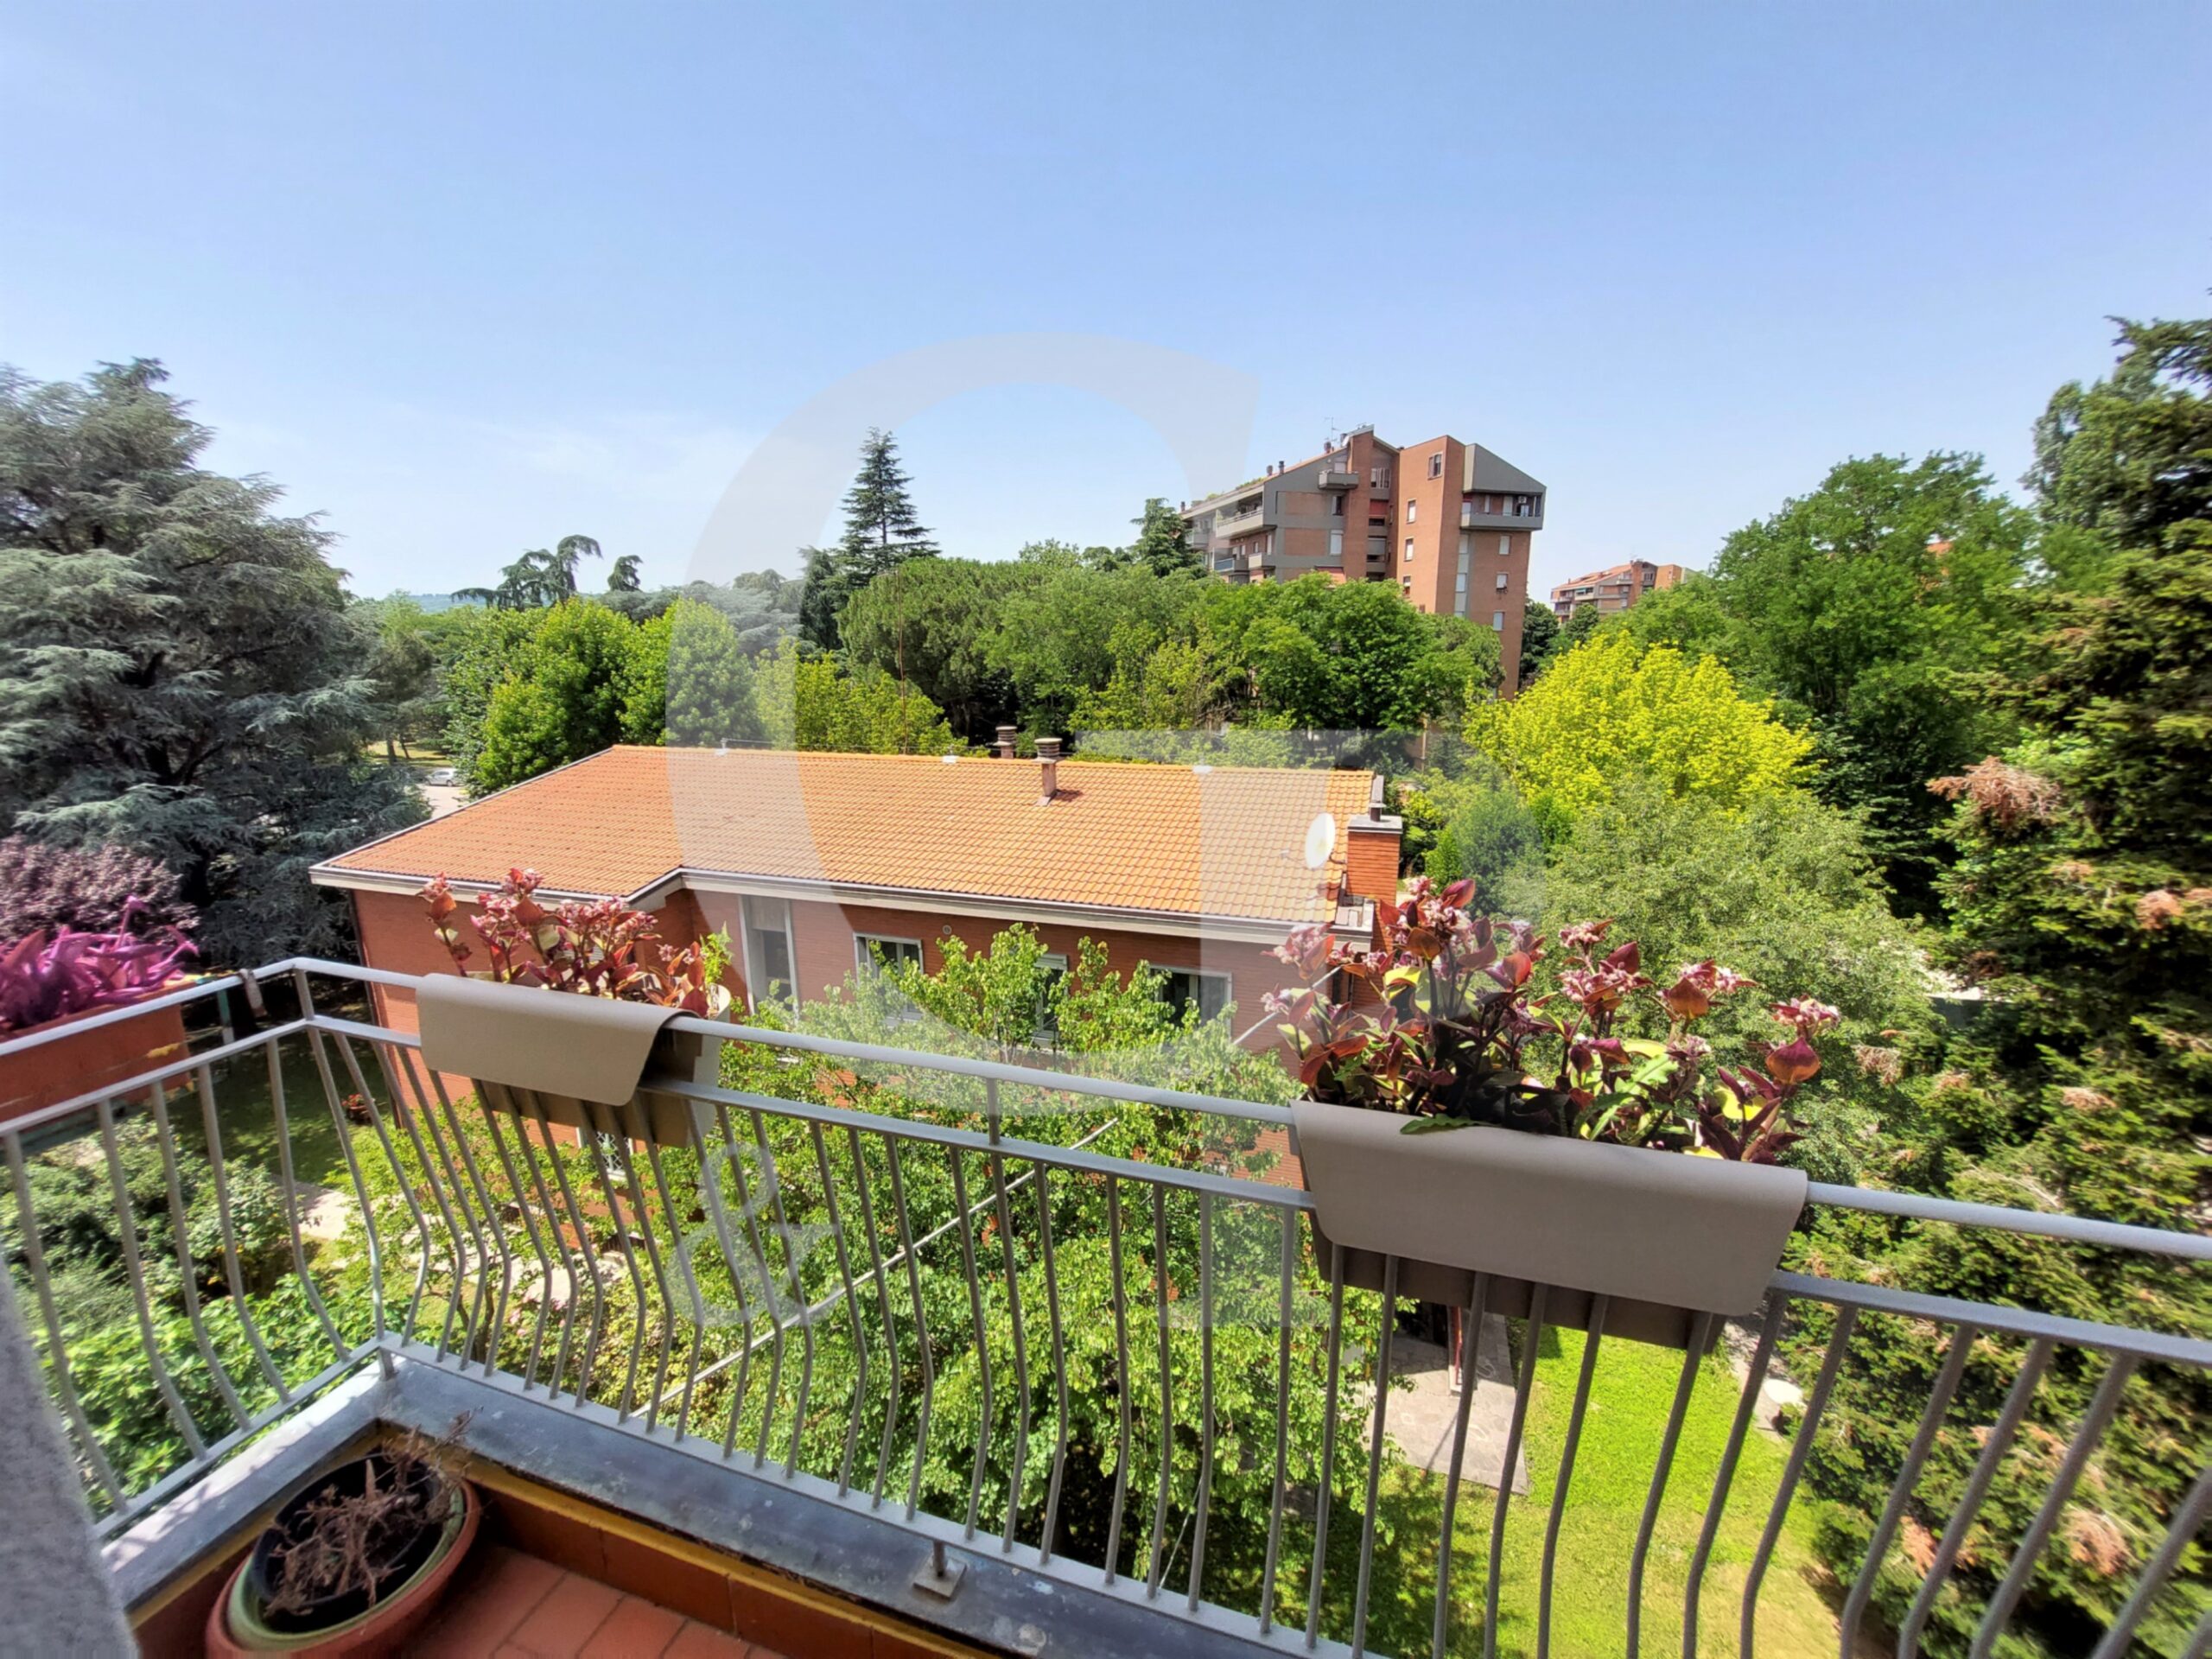 San Lazzaro di Savena (Bo), Appartamento su due livelli con terrazzo e posti auto (Via Casanova) – Vendita